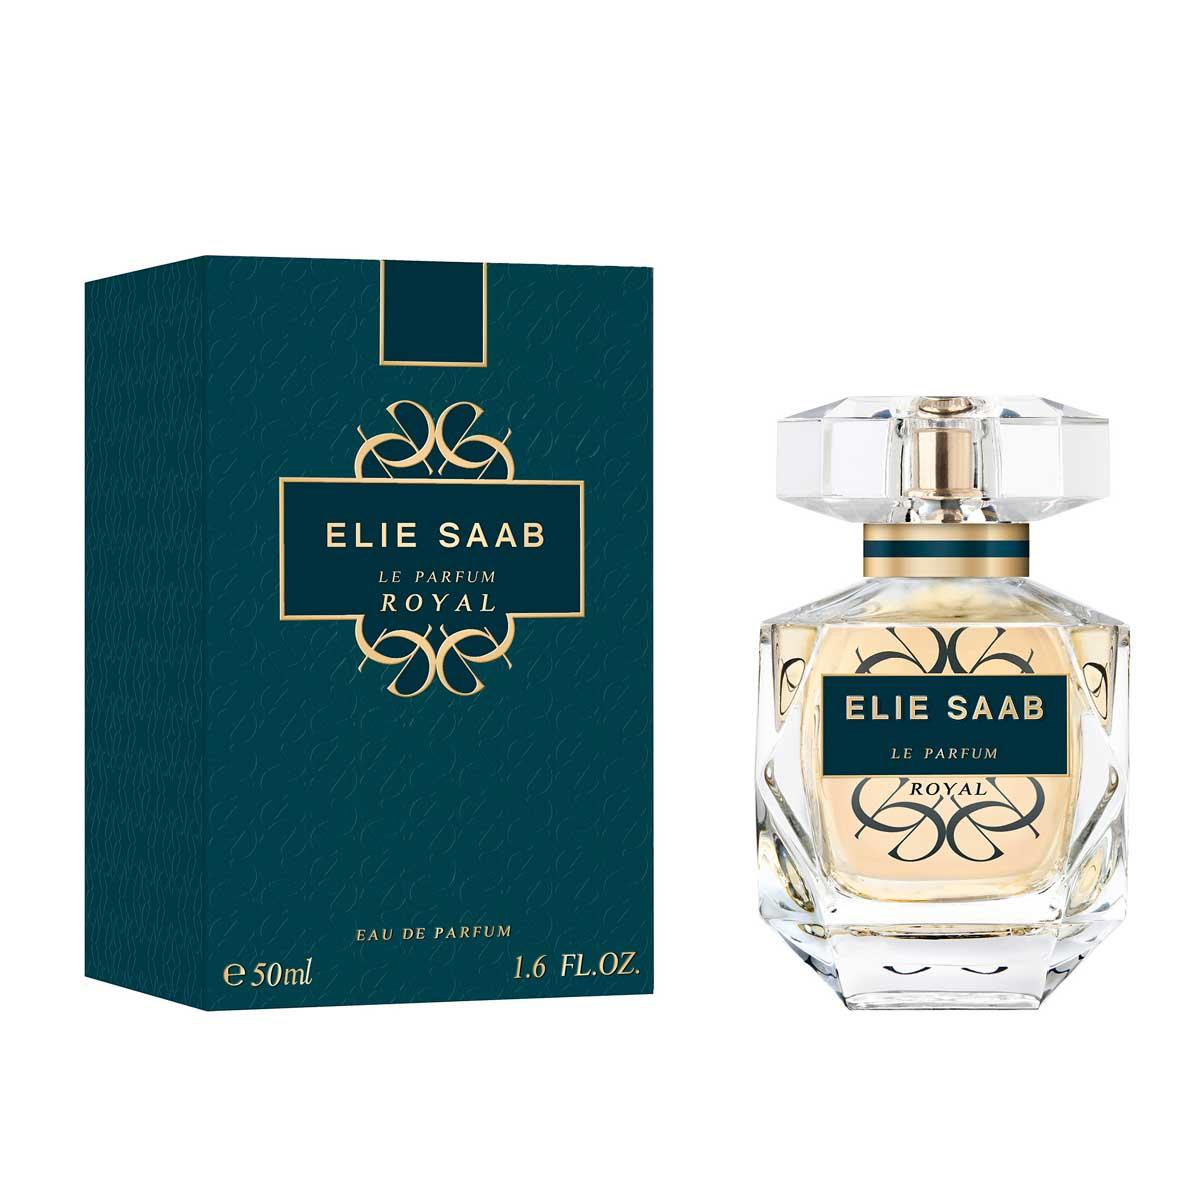 Elie Saab Le Parfum Royal Eau de Parfum 50ml | FEELUNIQUE